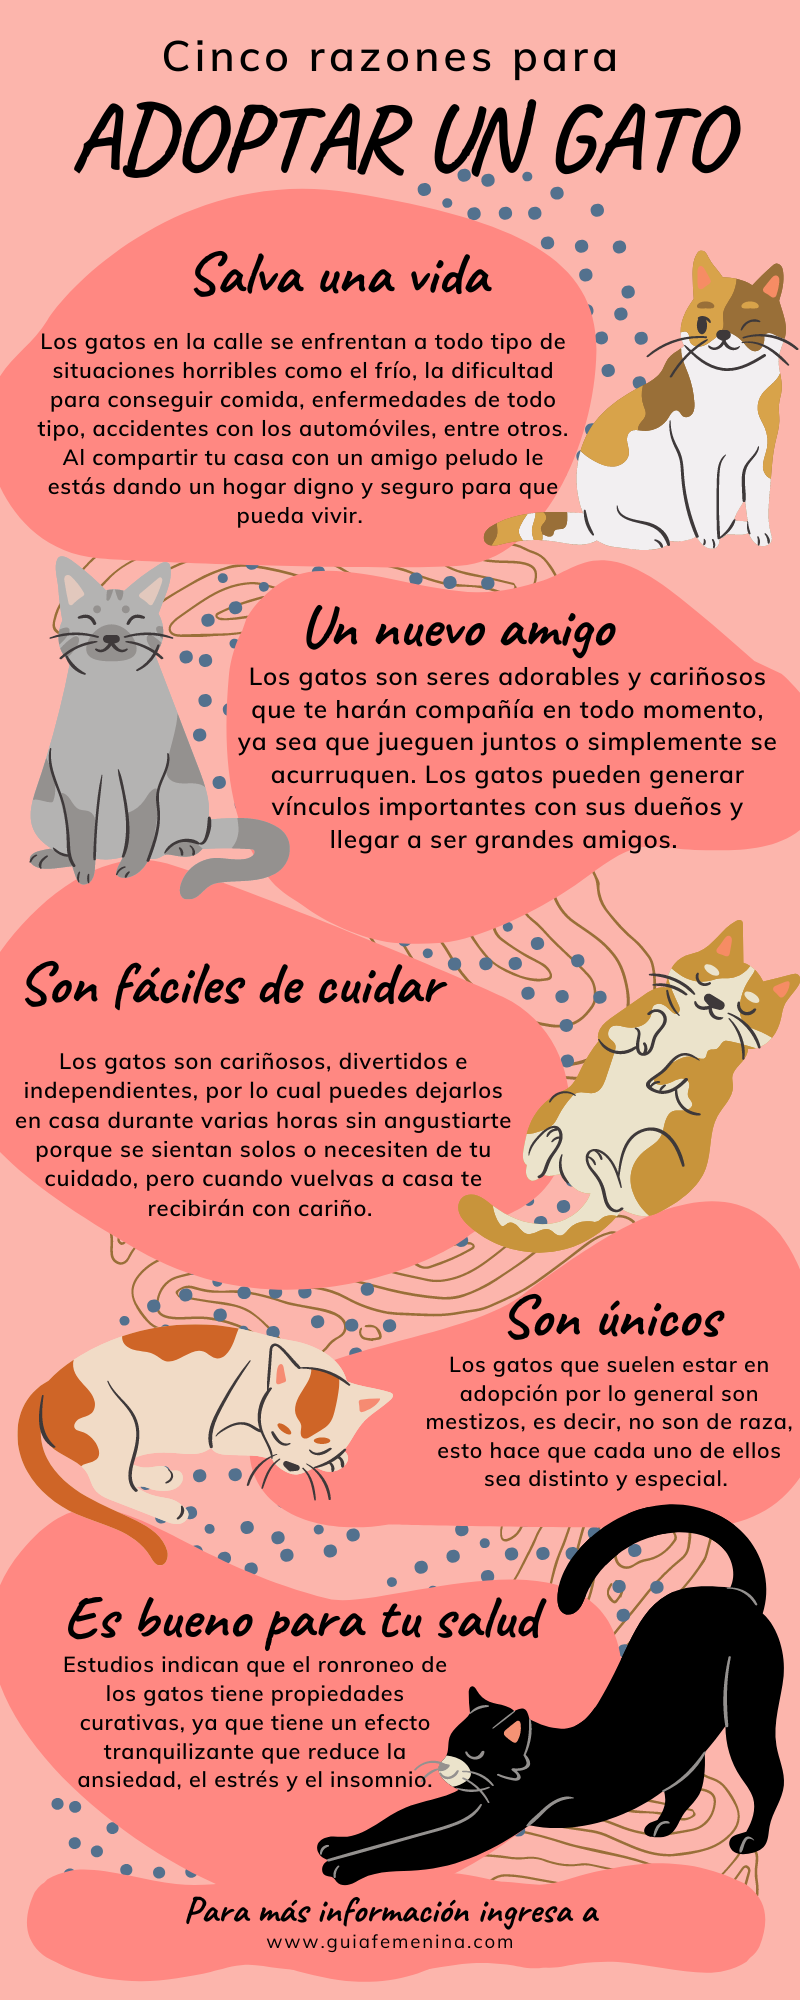 Cinco razones para adoptar un gato.